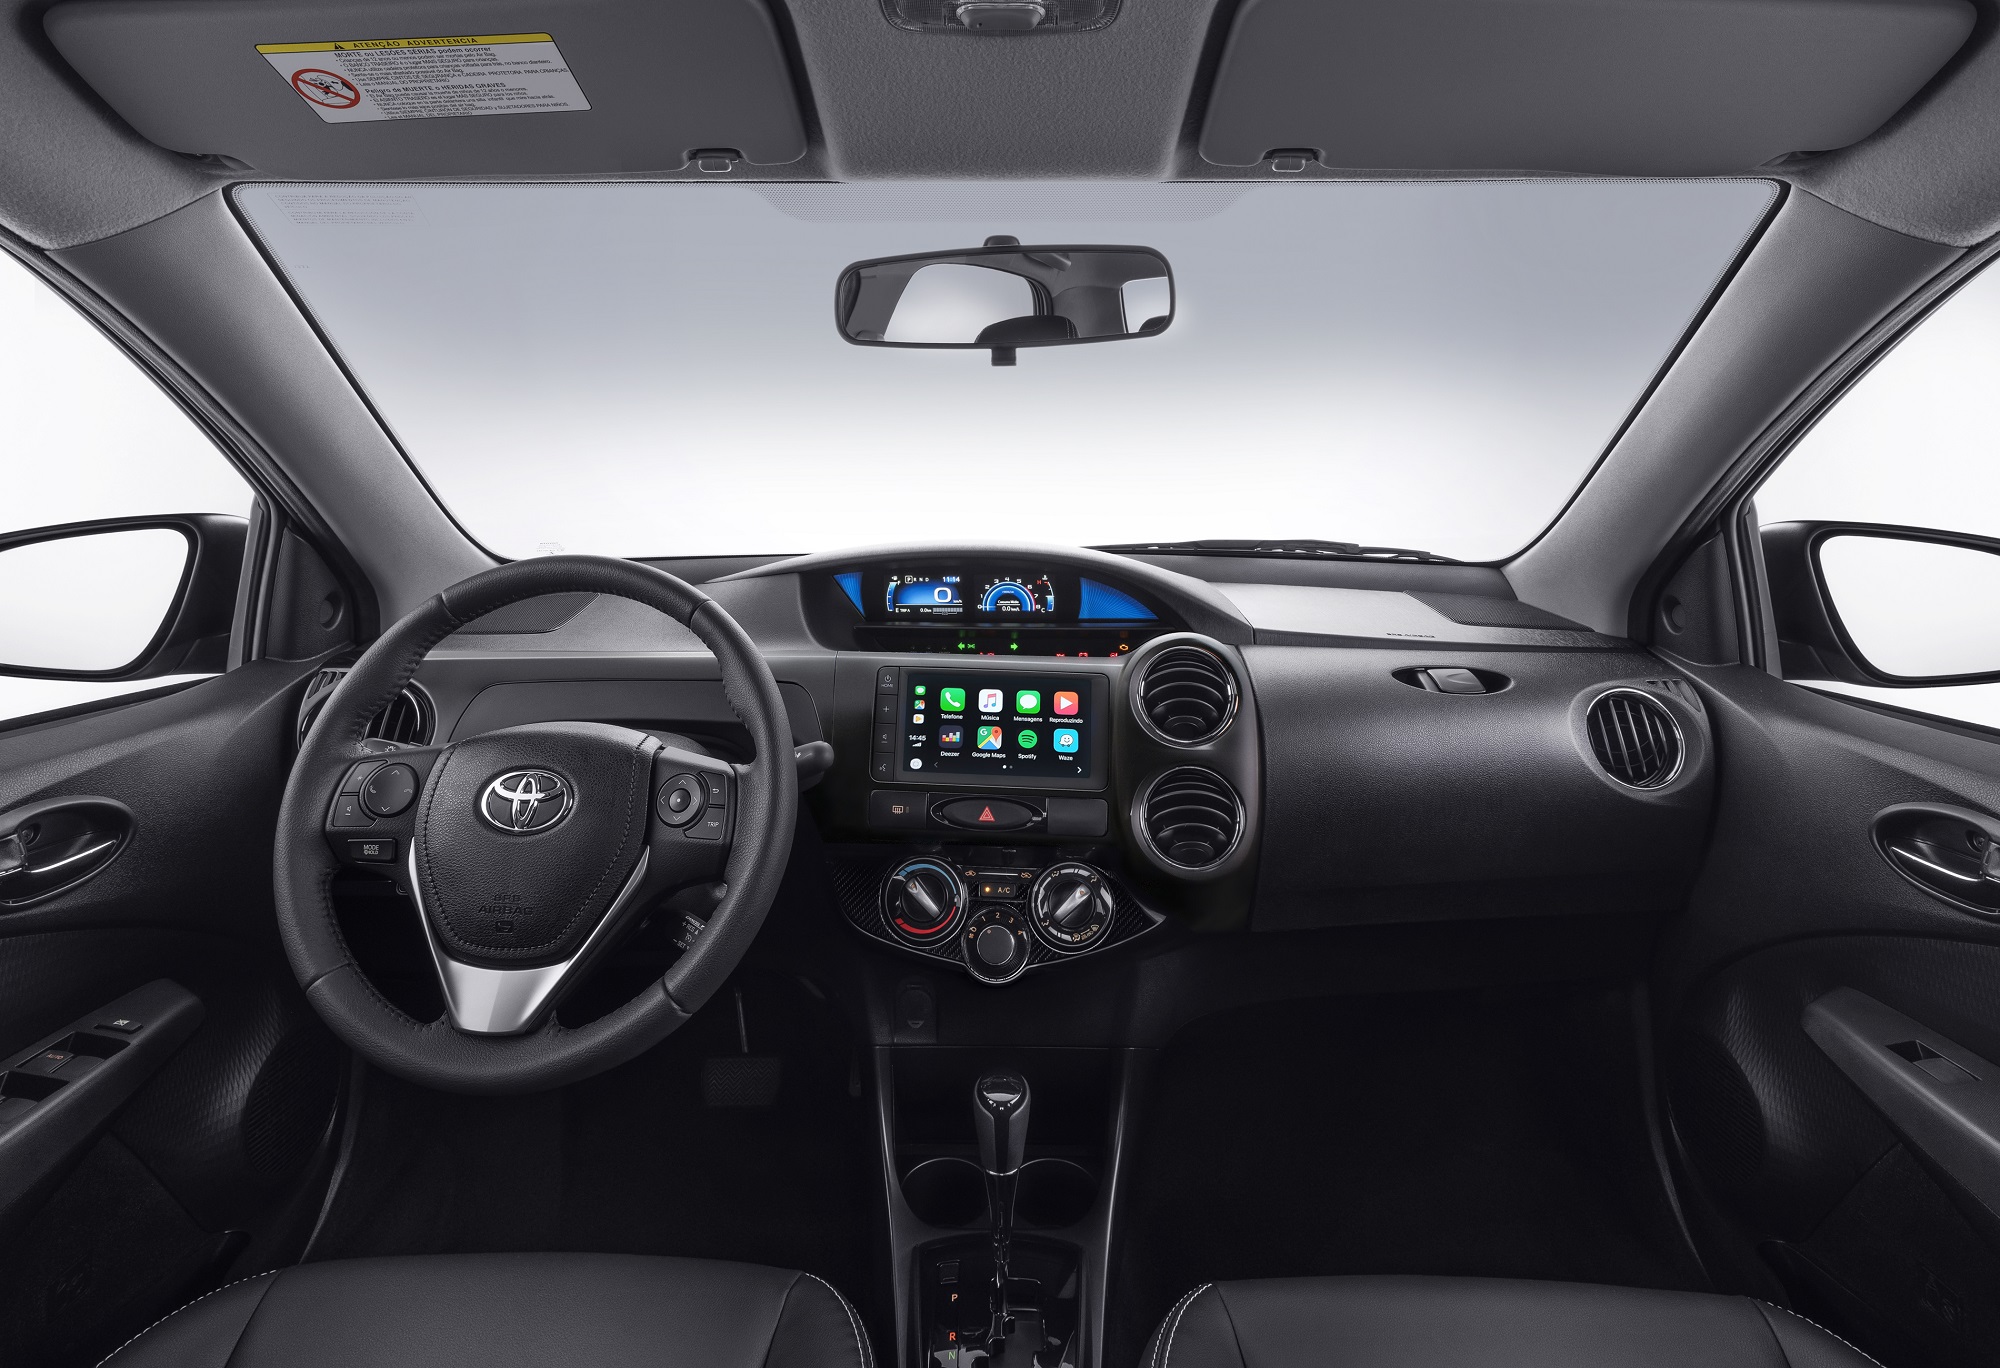 Cabine do Toyota Etios 2021 ganha nova central multimídia e muda acabamento preto brilhante por parão fosco